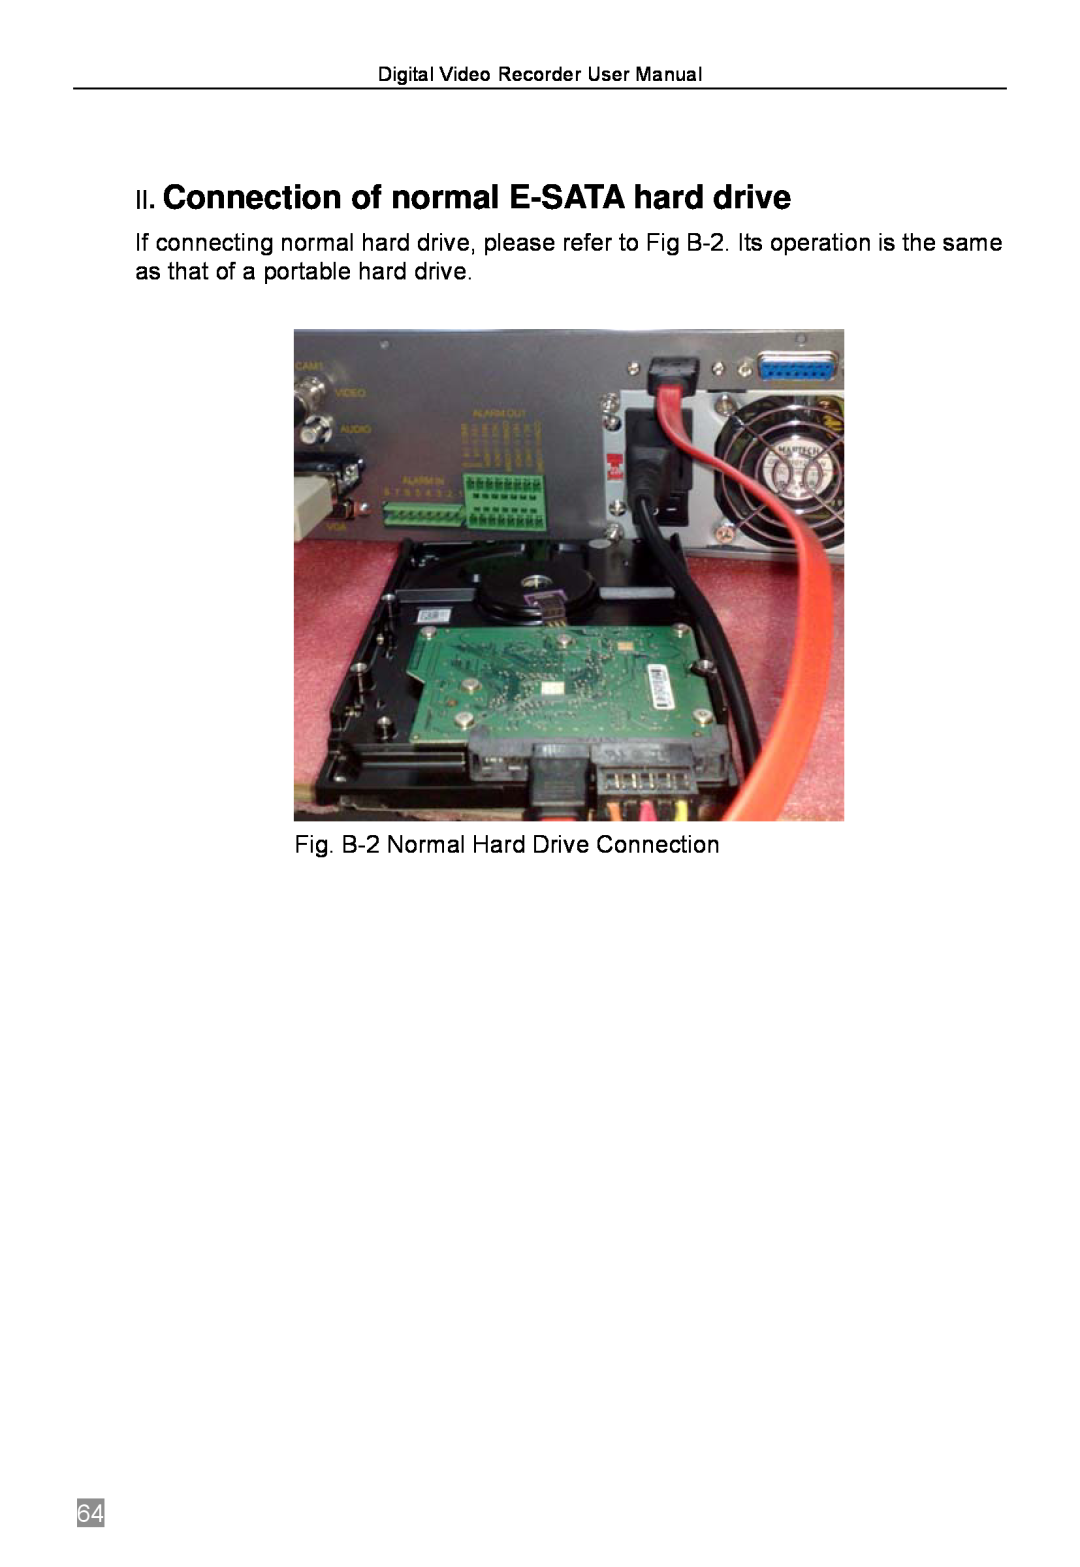 Q-See QSTD2404, QSTD2416, QSTD2408 Ⅱ. Connection of normal E-SATA hard drive, Fig. B-2 Normal Hard Drive Connection 